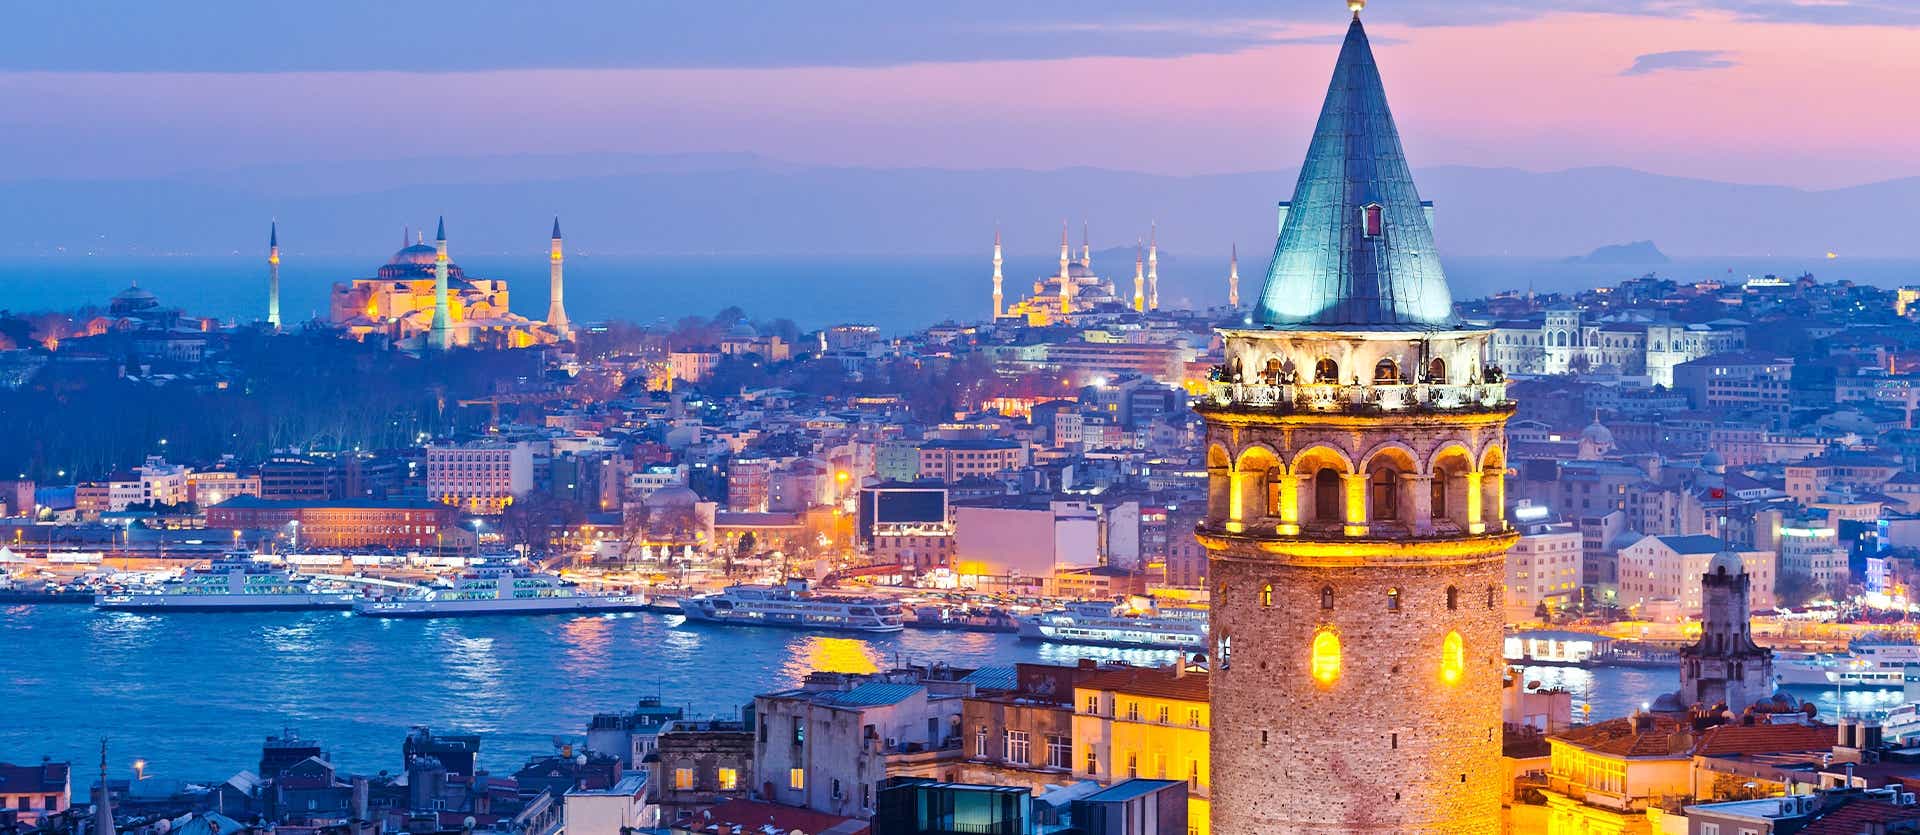 Galata Tower <span class="iconos separador"></span> Istanbul <span class="iconos separador"></span> Turkey